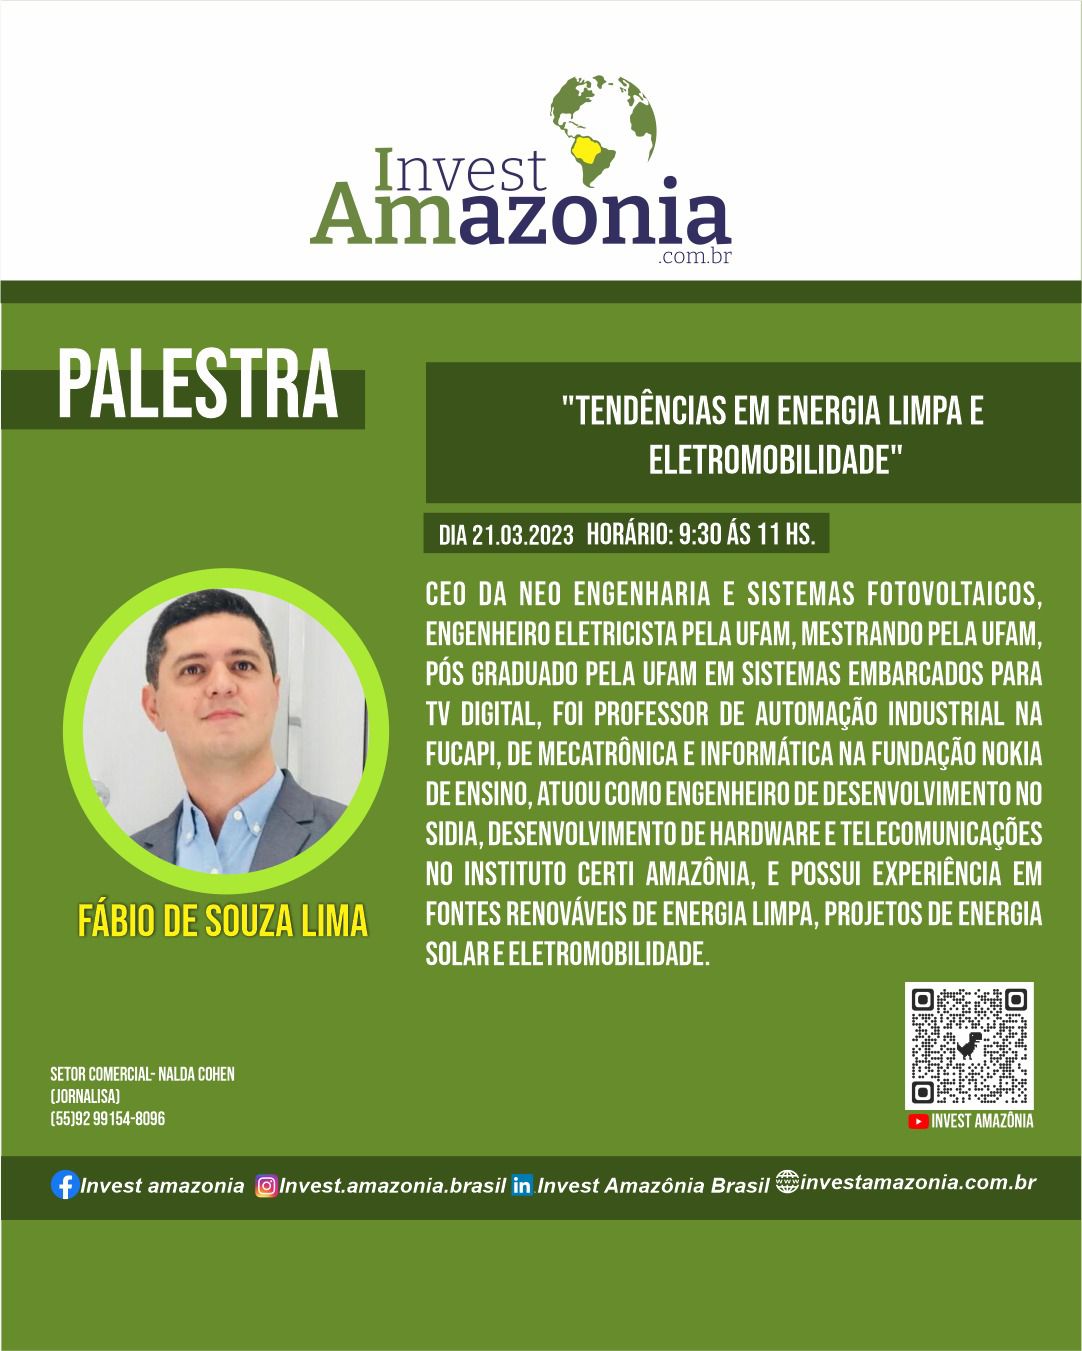 Palestra com o tema “Tendências em energia limpa e eletromobilidade", será ministrada por Fábio de Souza Lima, CEO DA NEO ENGENHARIA.